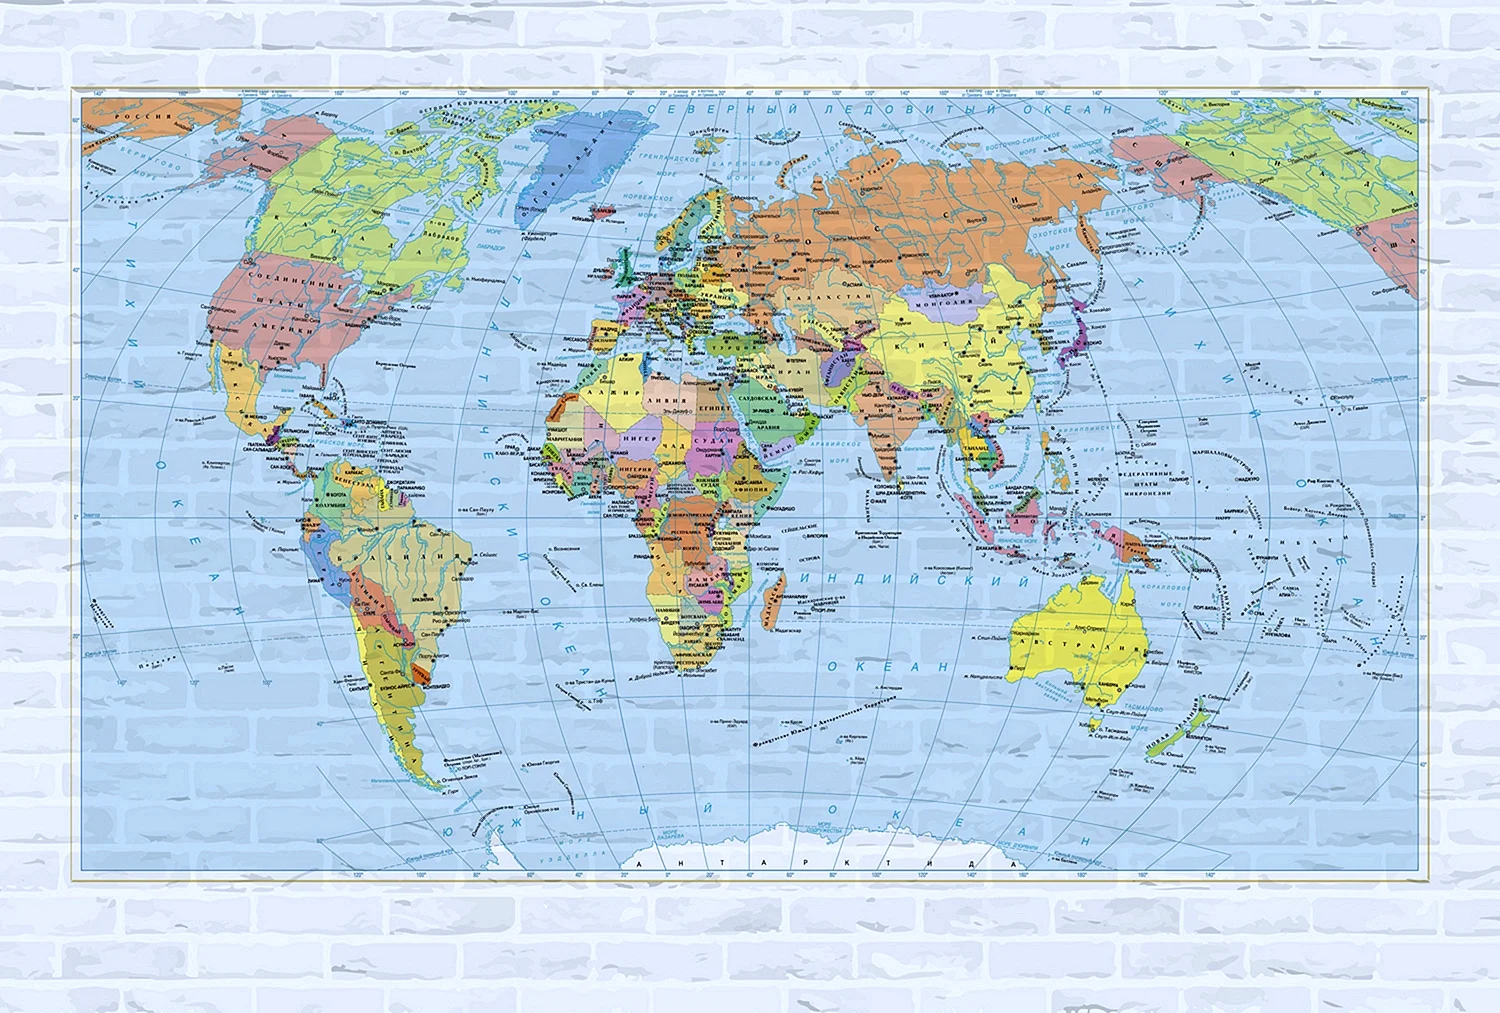 Карта мира политическая и географическая крупная